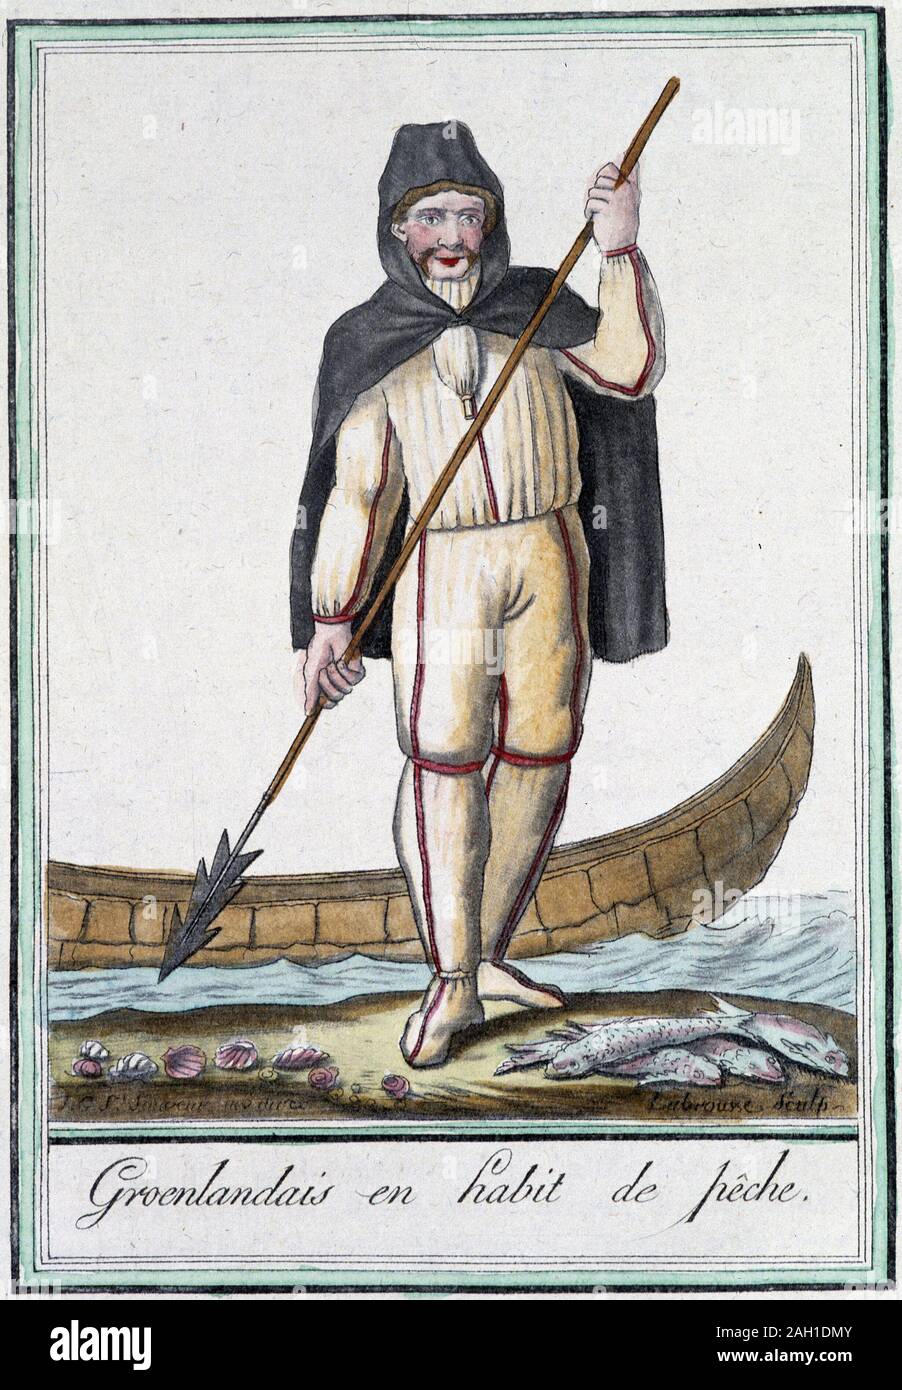 Groenlandais en habit de pche - in 'Encyclopedie des voyages' par Grasset Saint Sauveur, ed. Paris 1796 Stock Photo